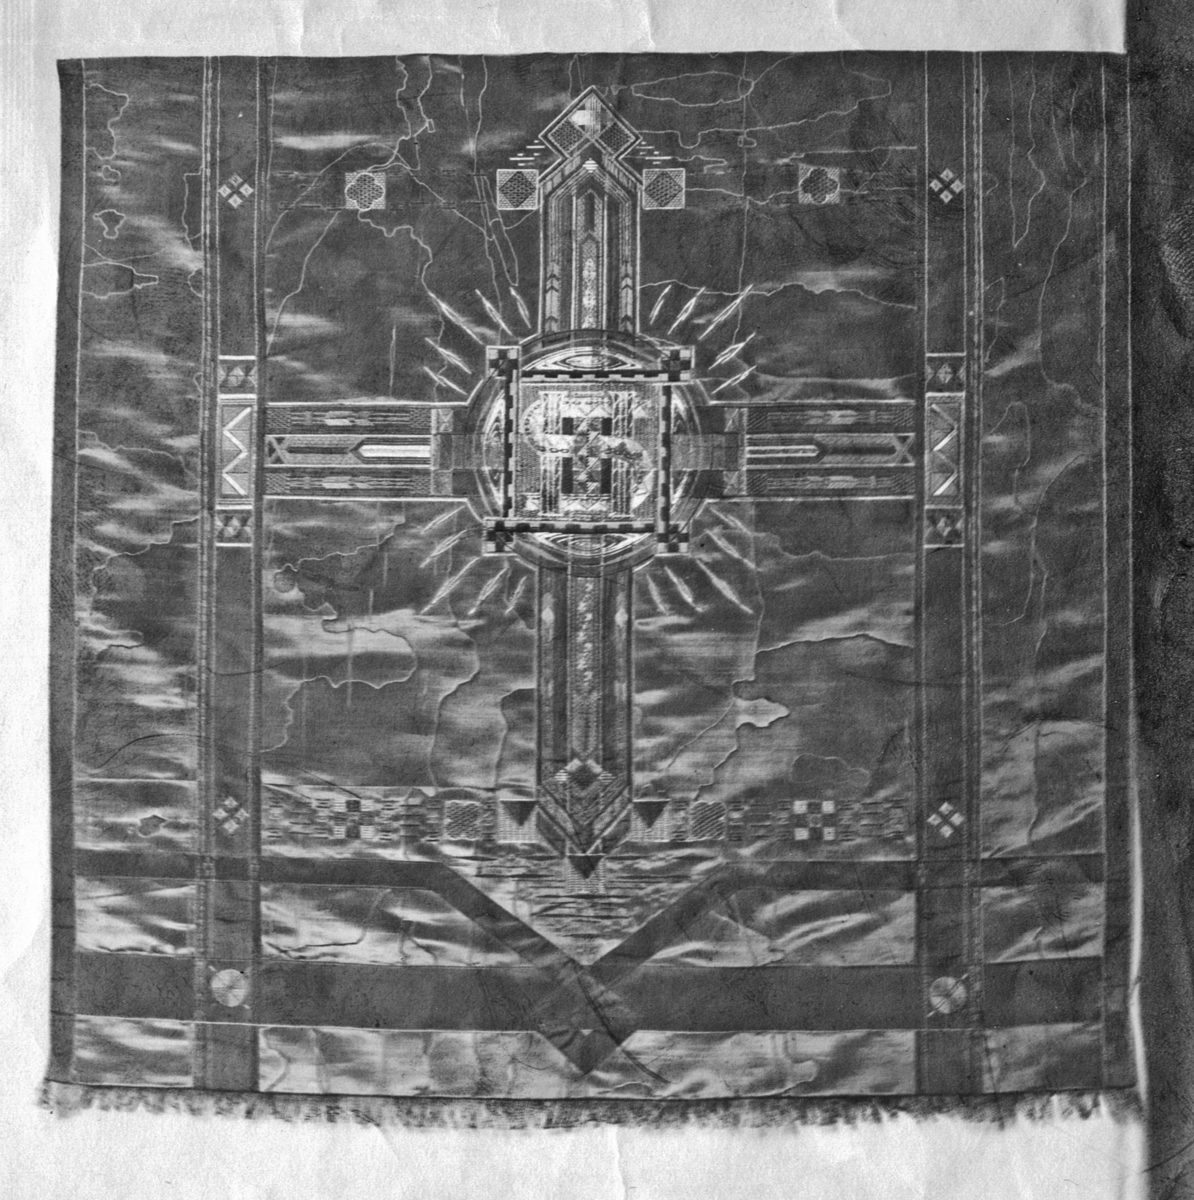 Foto (svart/vitt) av en kalkduk (?) i mörkt vattrat siden, broderad med metalltråd. I mitten en fyrkant, med ett stort "S" i mitten. 

Inskrivet i huvudbok 1983.